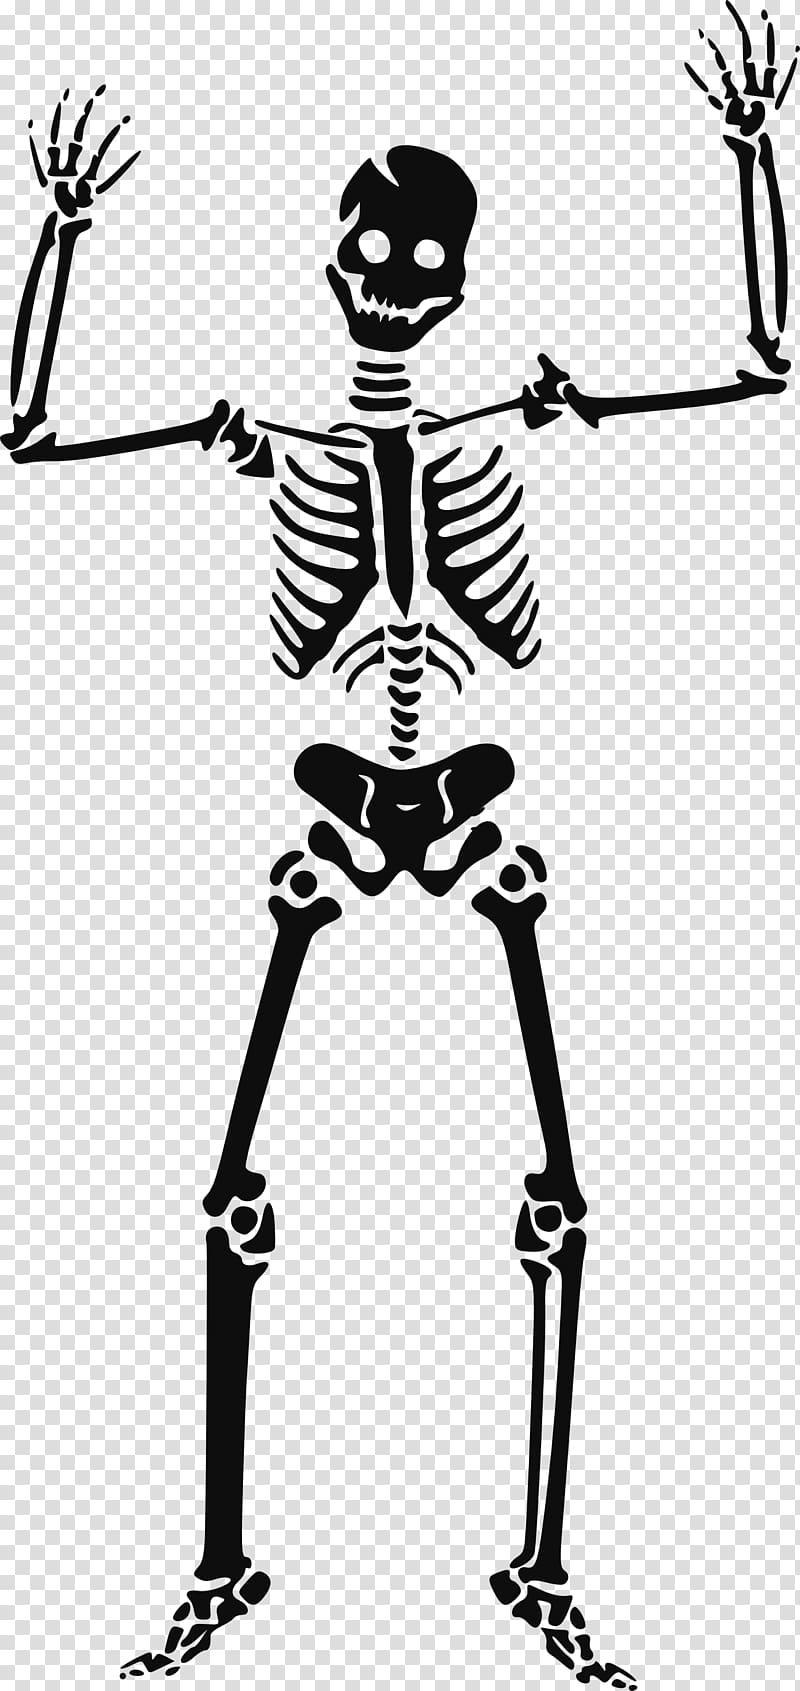 skeleton illustration, Skeleton Skull , Skeleton siluet transparent background PNG clipart